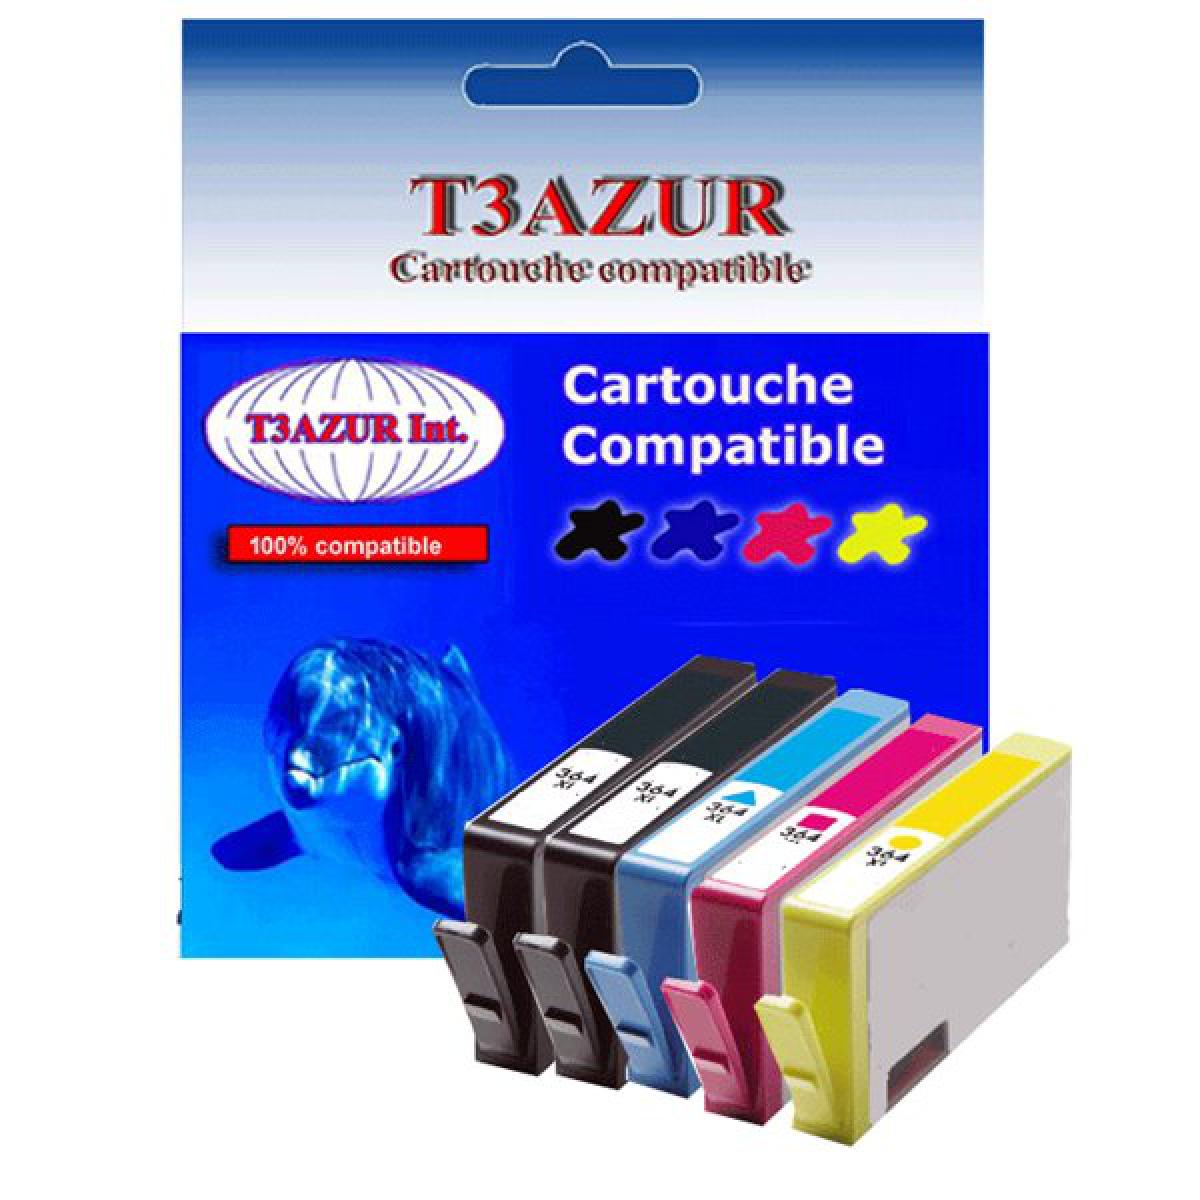 T3Azur - Lot de 5 Cartouches compatibles pour imprimante HP Photosmart B110, B110a, B110a/c/e, B110c, B110, B110d, B110 (2Bk+1C+1M+1J)- T3AZUR - Cartouche d'encre